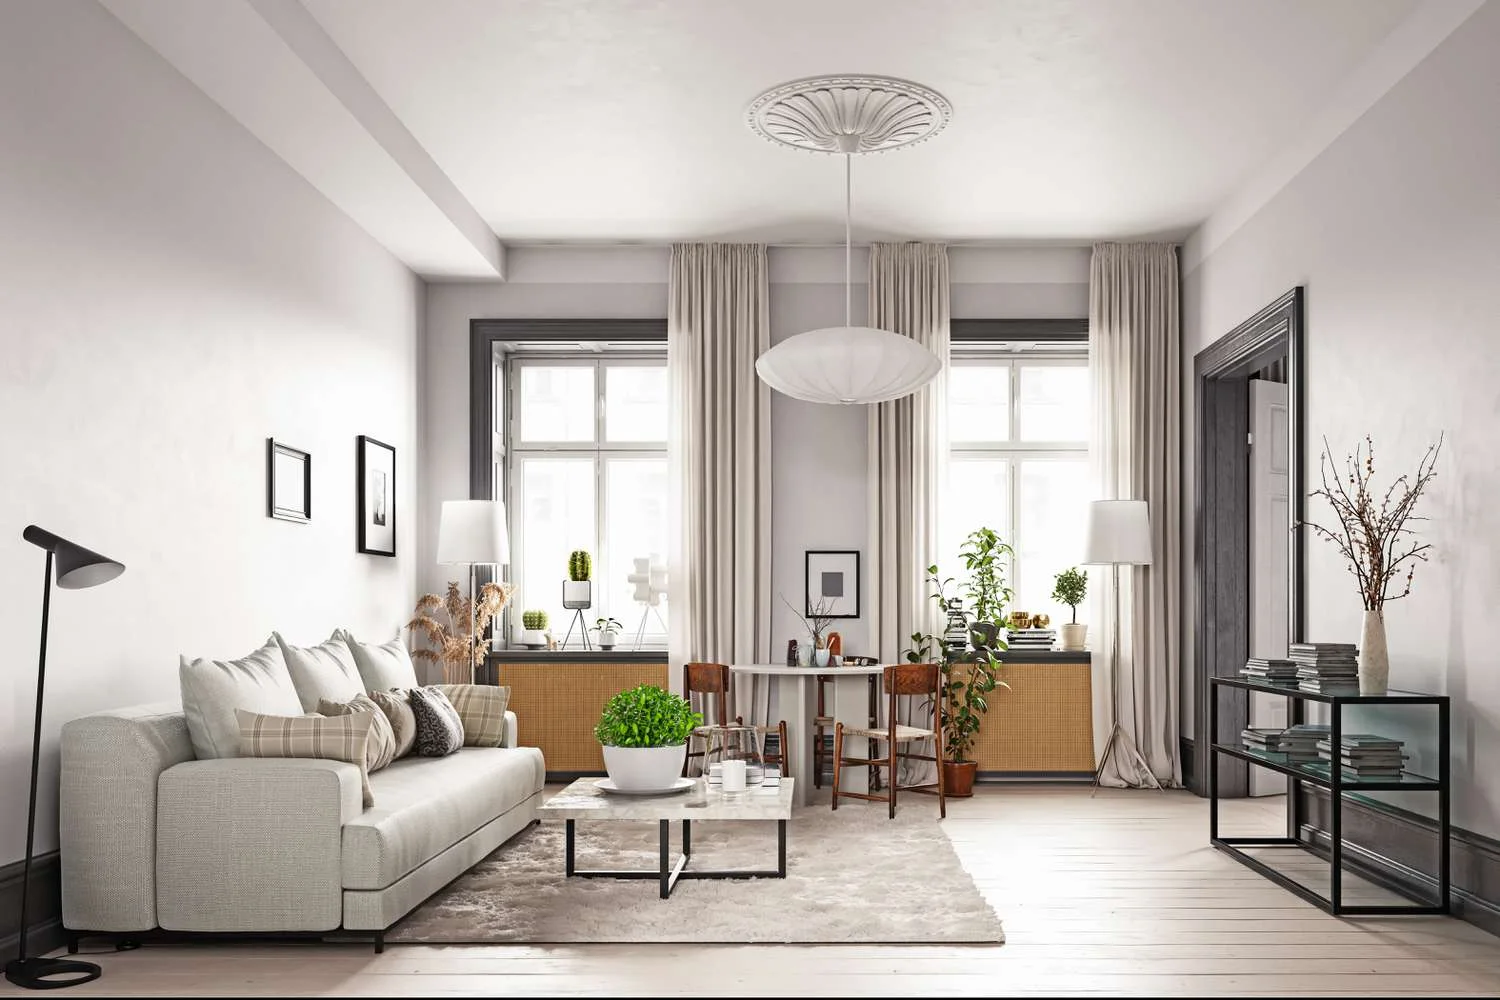 Thiết kế phòng khách đơn giản mà đẹp theo phong cách tối giản